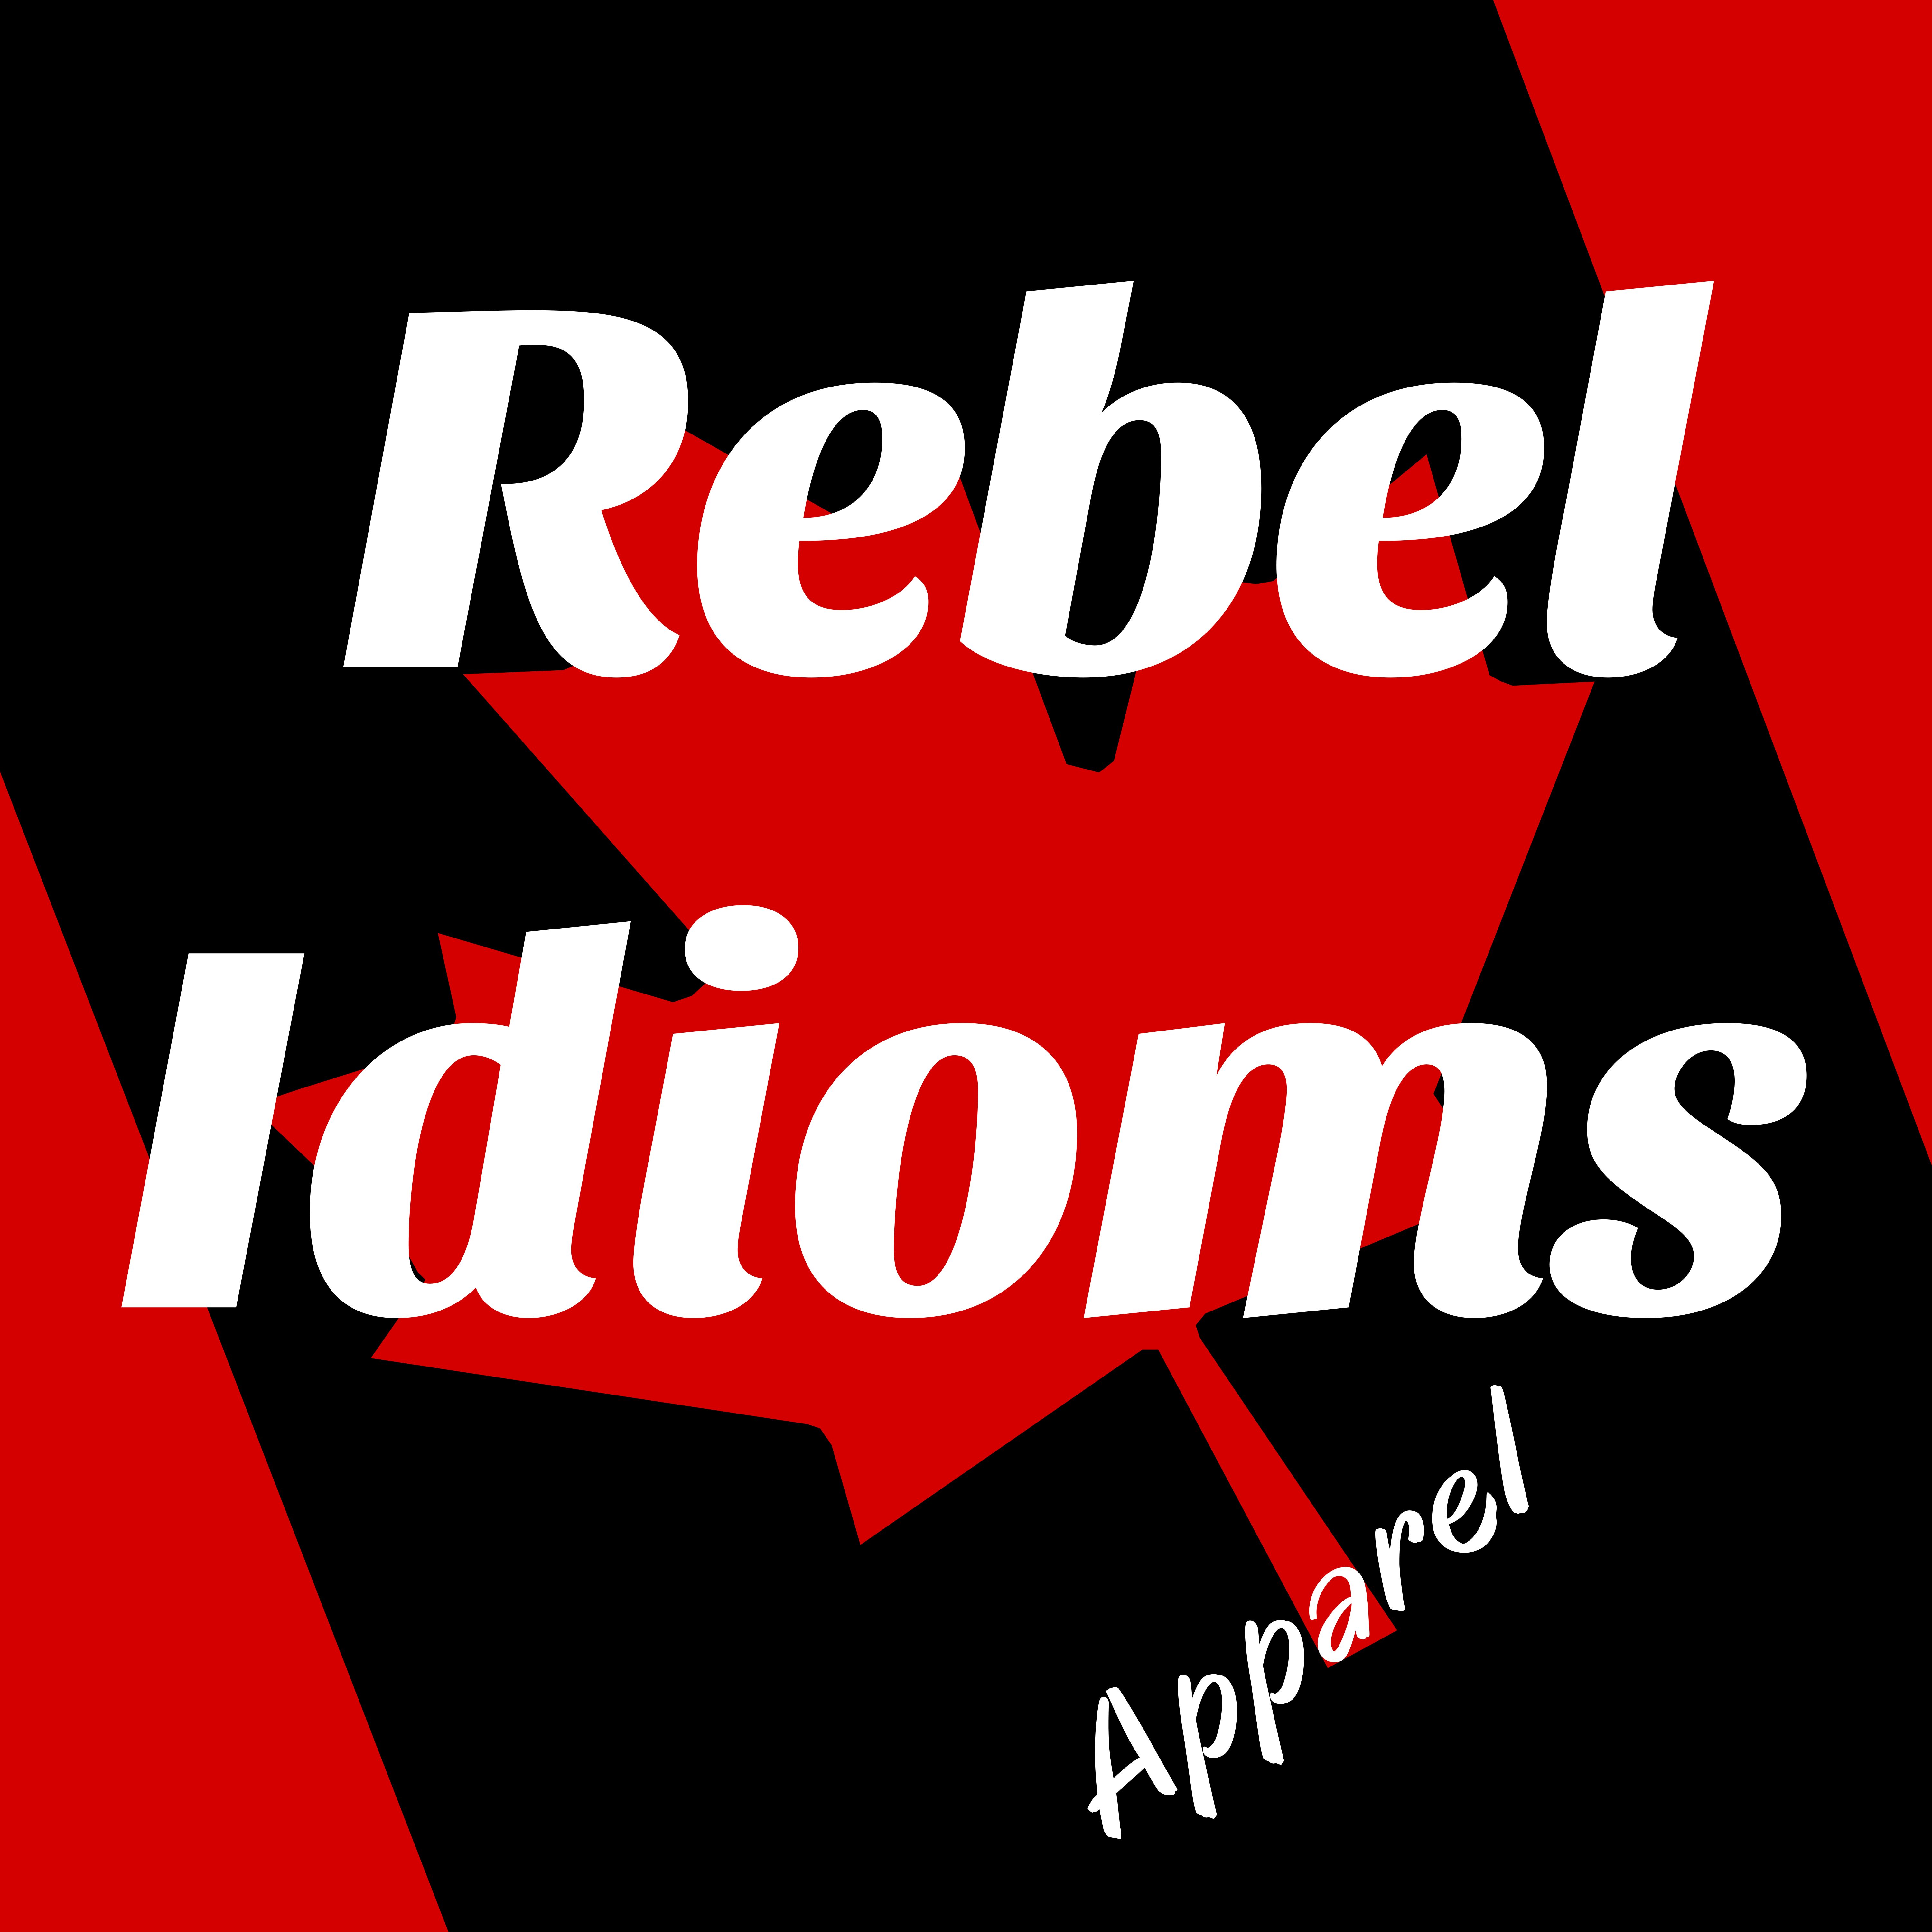 Rebel Idioms Apparel